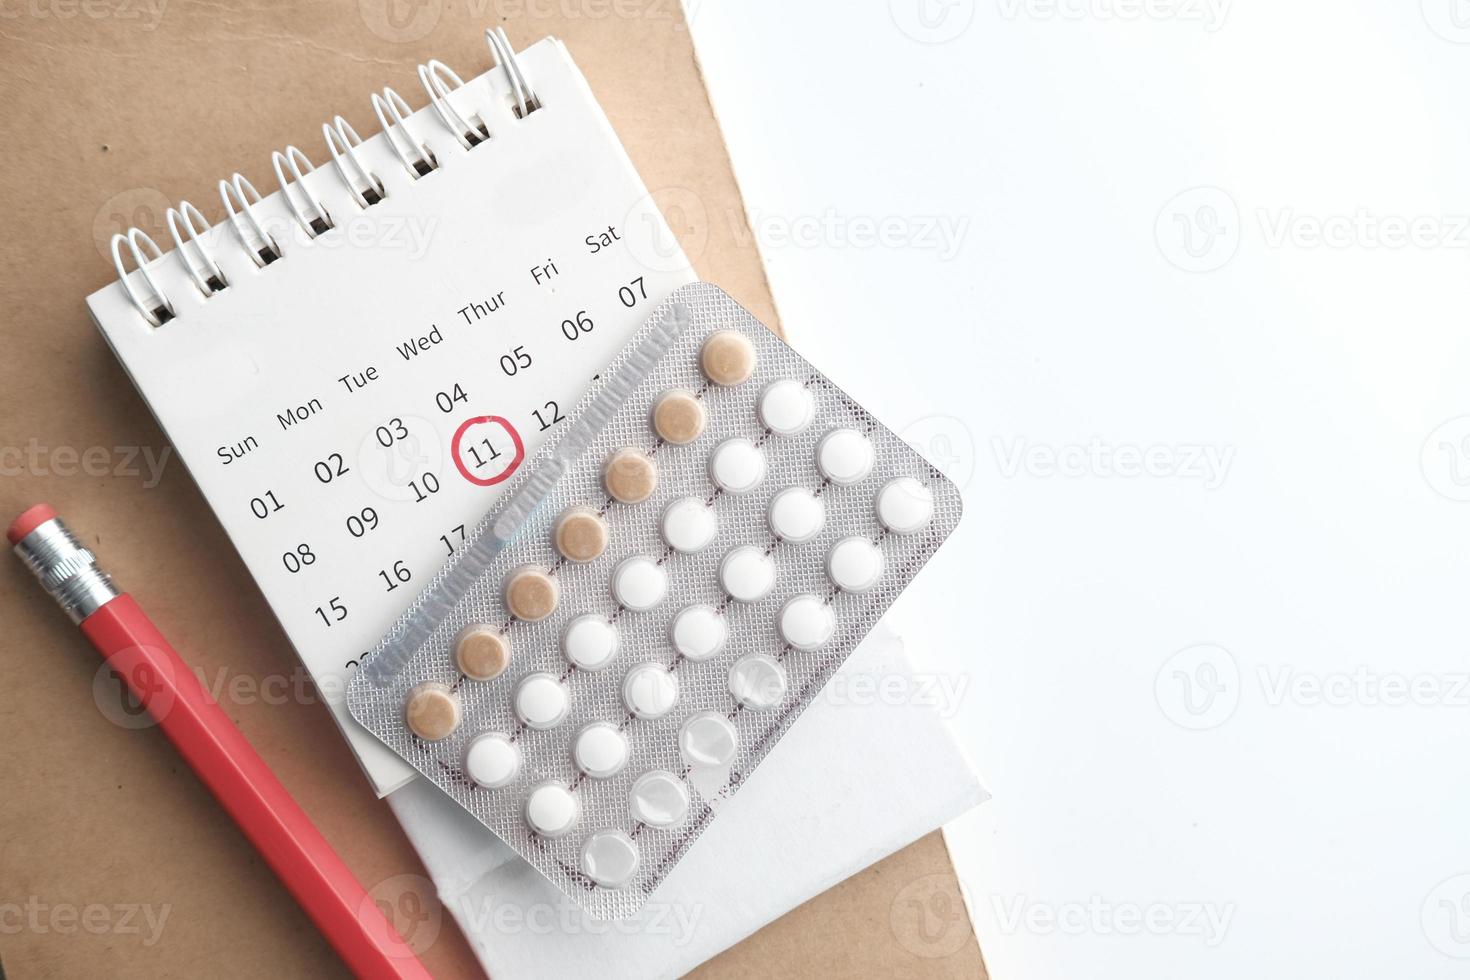 Antibabypillen, Kalender und Notizblock auf dem Tisch foto